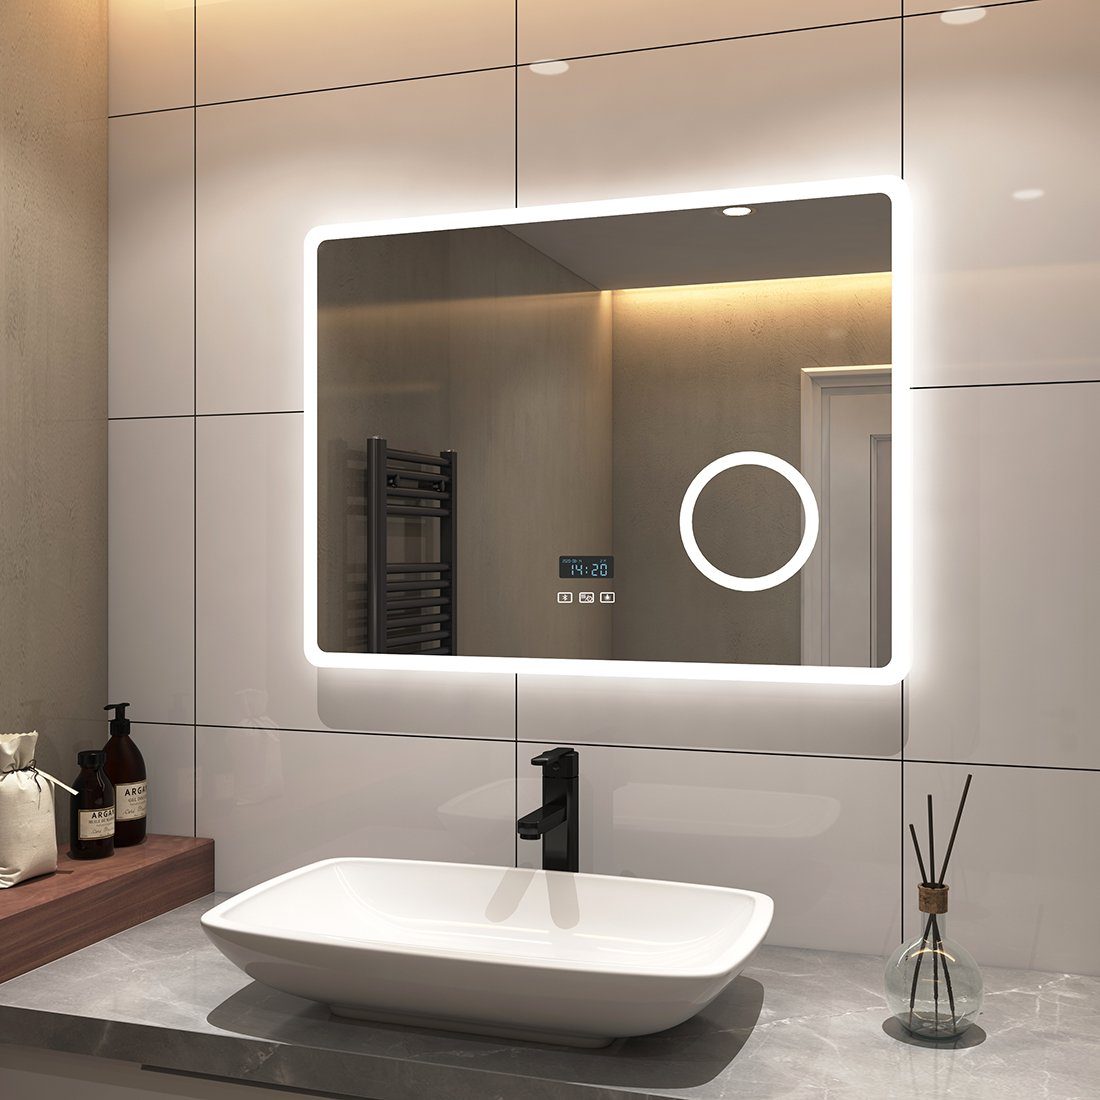 S'AFIELINA Badspiegel Wandspiegel mit Beleuchtung LED Badspiegel mit  Energiesparend, Touchschalter,Beschlagfrei,Bluetooth,3-fach Vergrößerung,3  Lichtfarbe